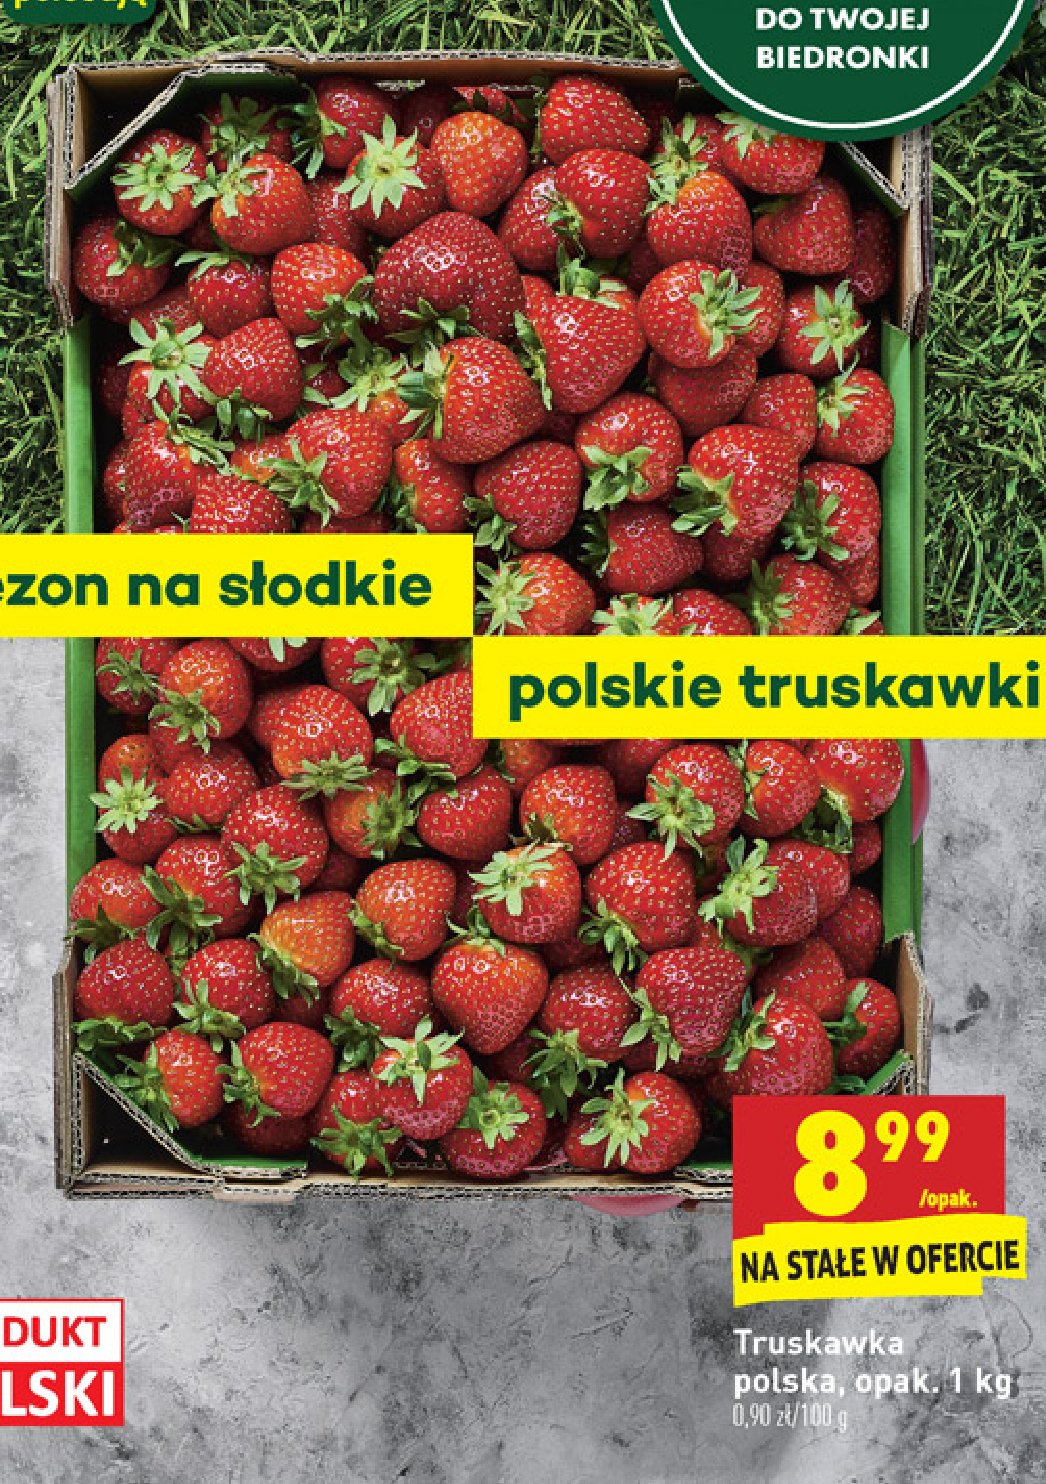 Truskawki polskie promocja